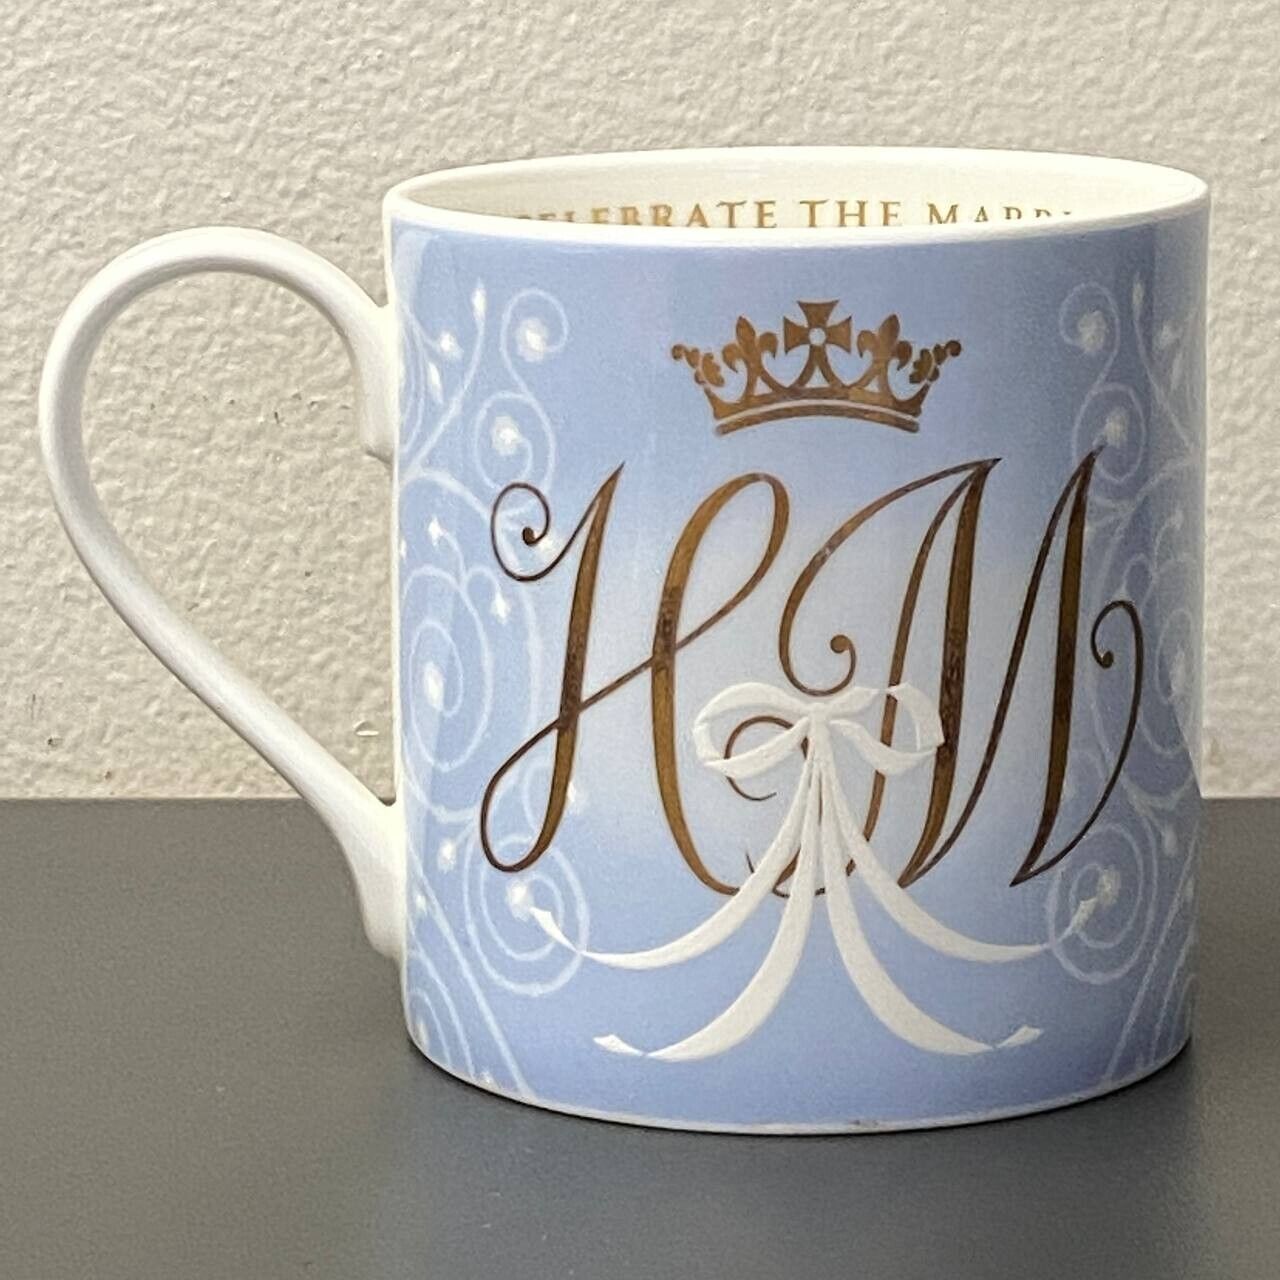 Prince Harry & Meghan Markle Wedding Mug Commemorative Royal Collection